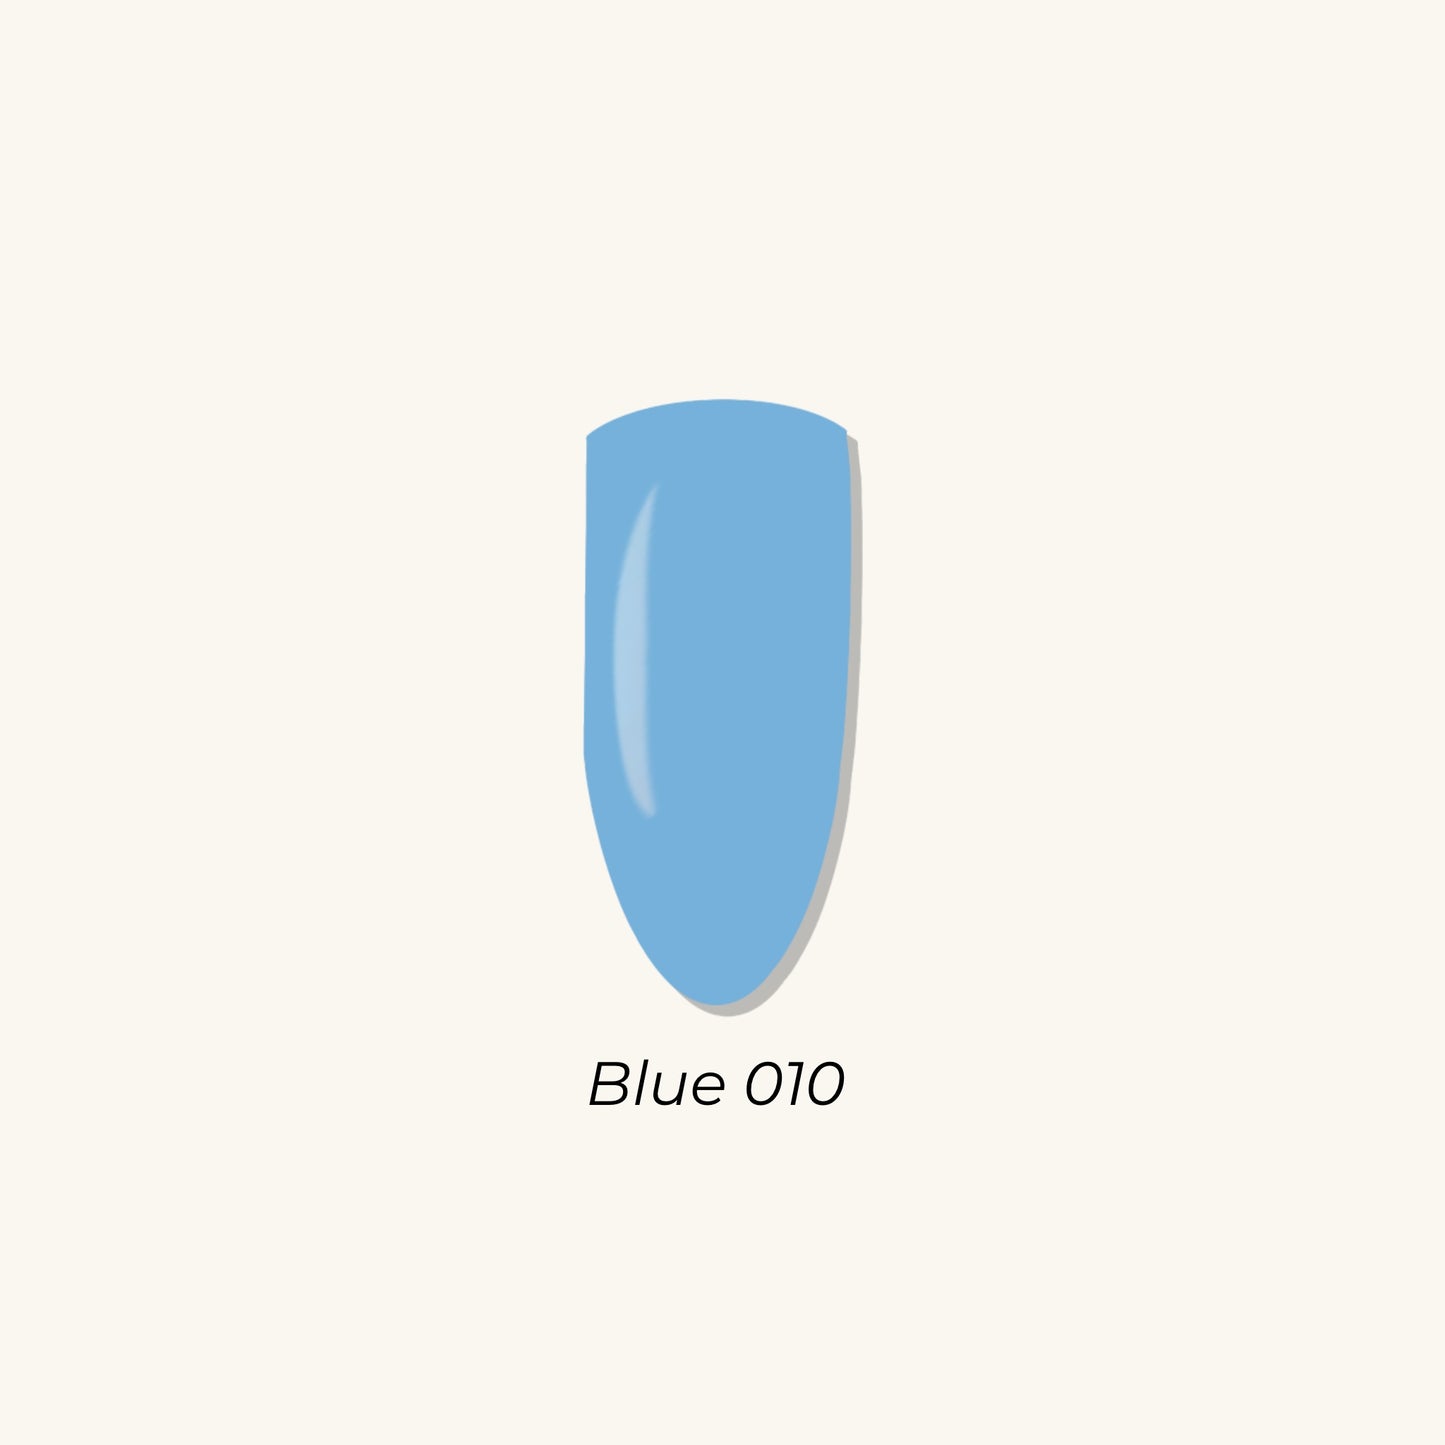 Blue 010